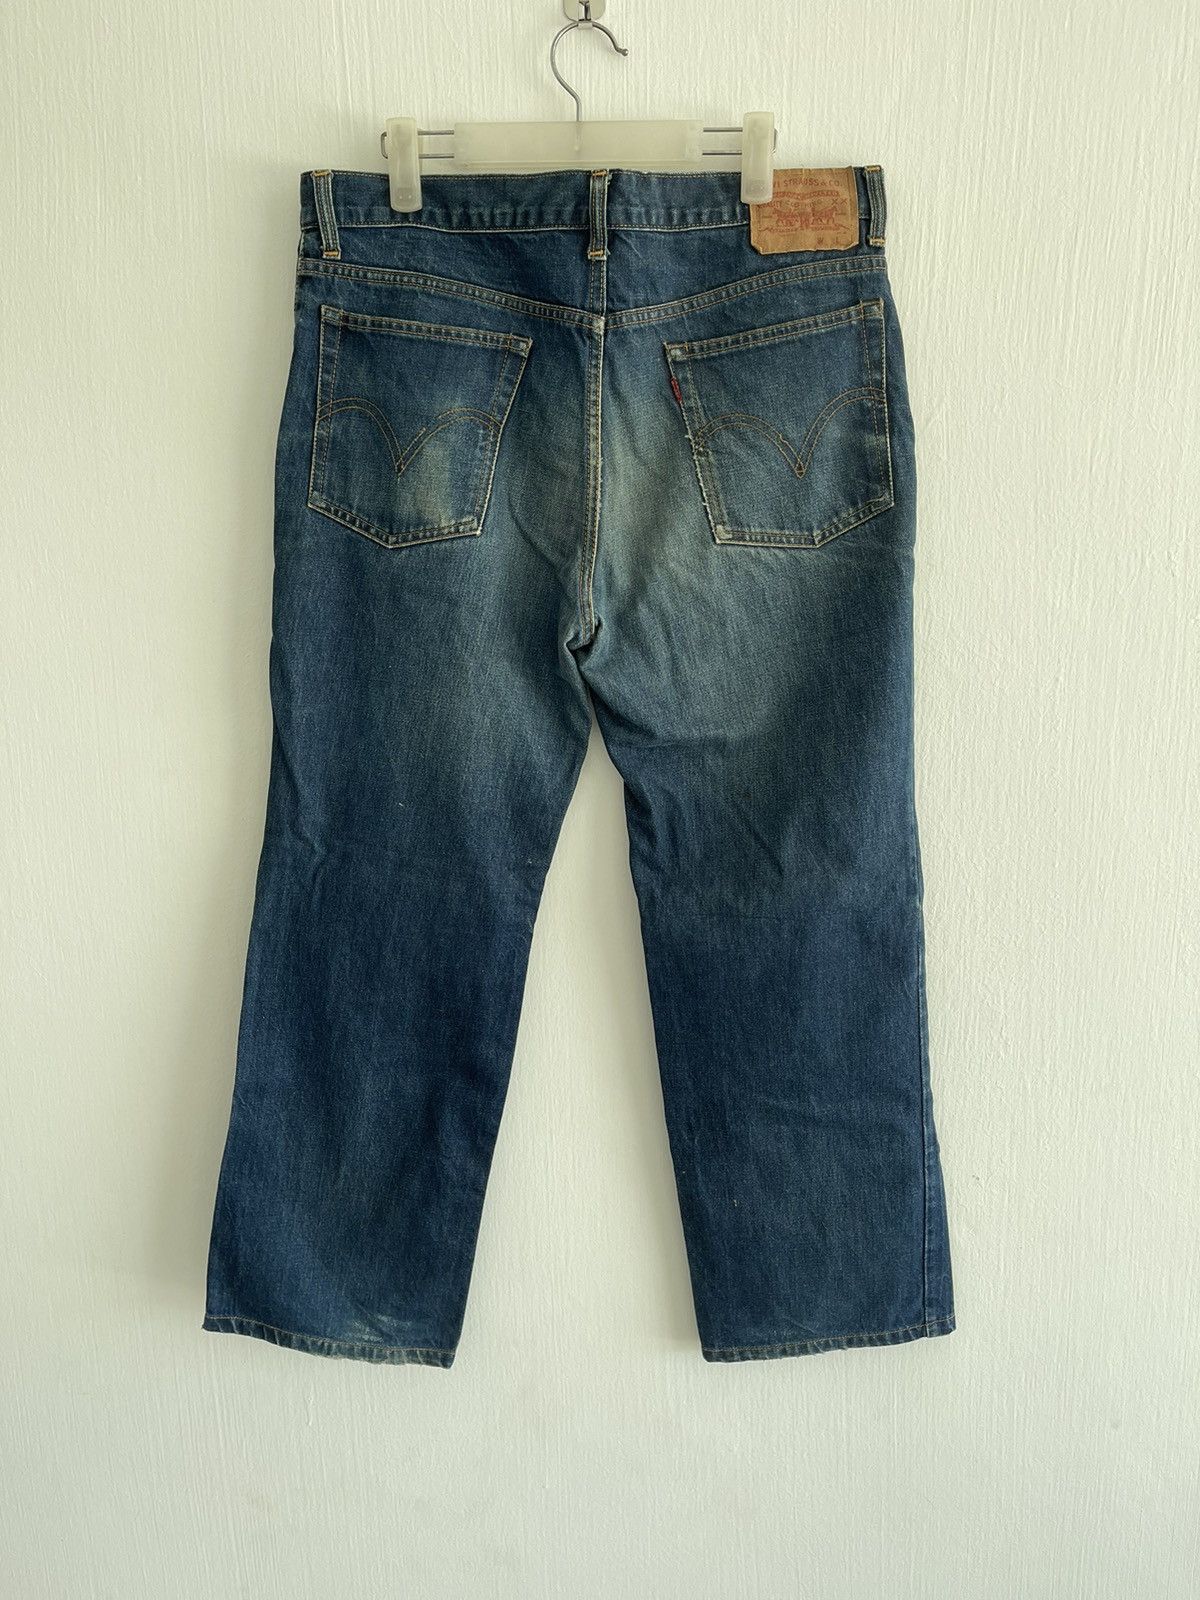 Vintage Levis jeans - 2